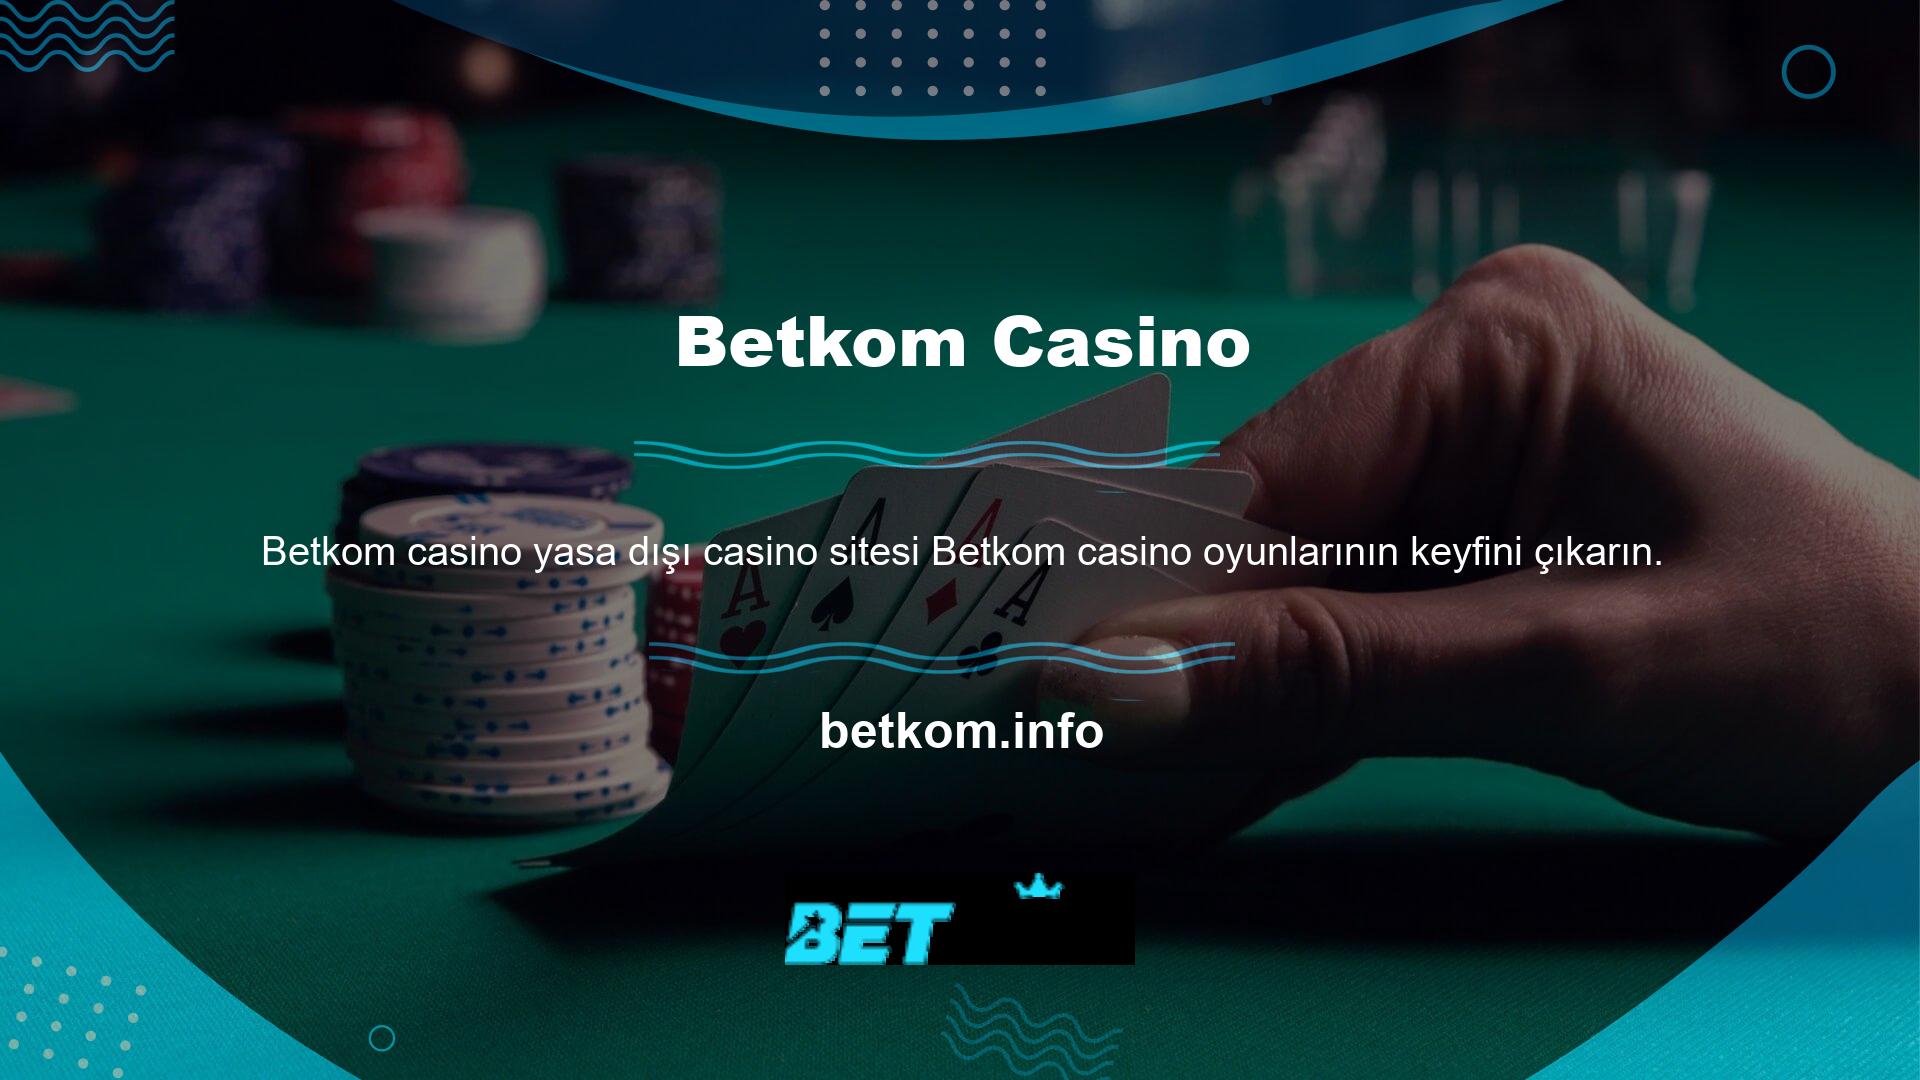 Betkom yasadışı casino sitesinde birçok oyun bulunmaktadır